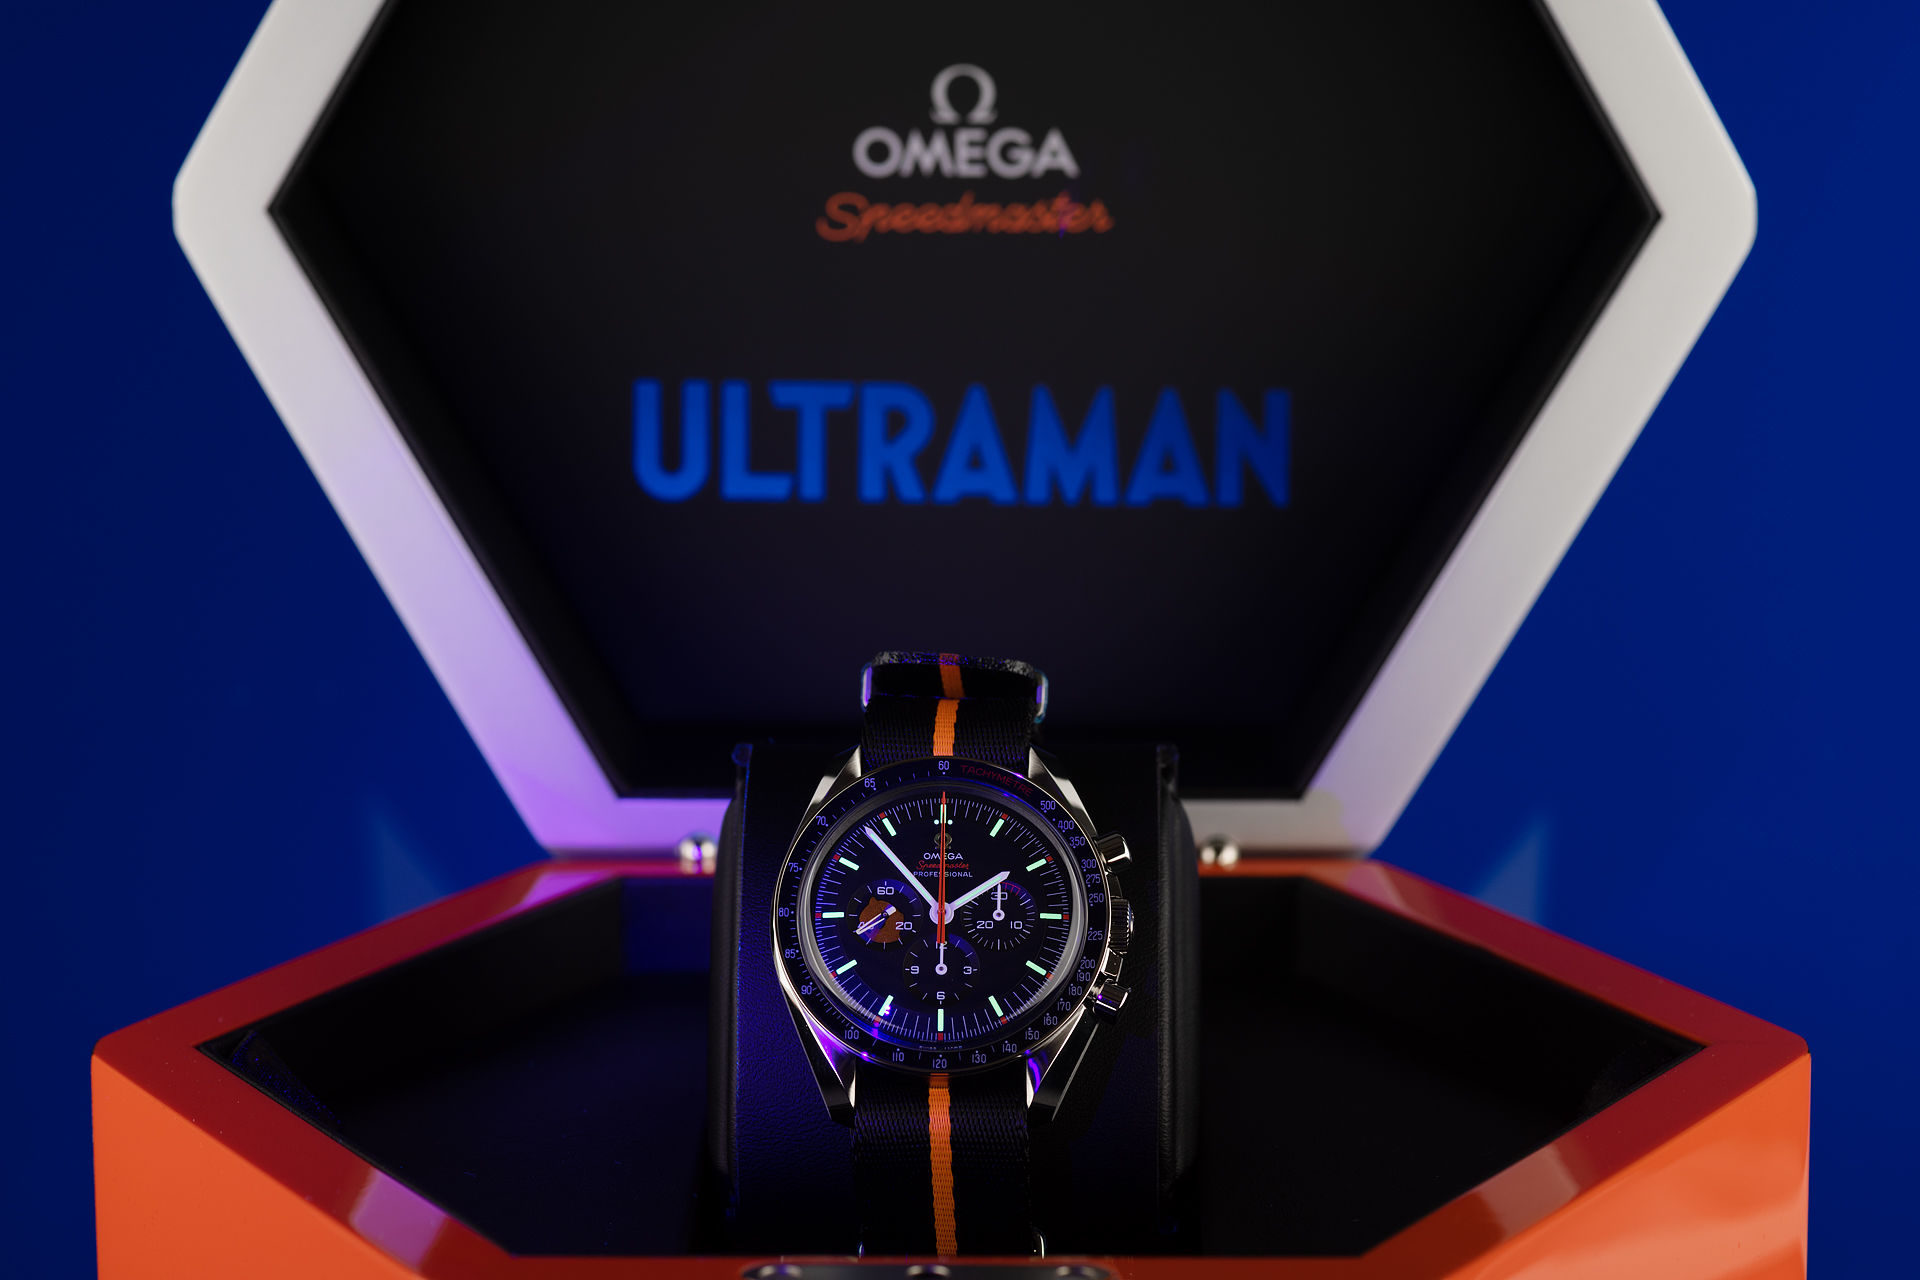 ref 31112423001001 | Limited Edition | Omega Speedmaster Ultraman